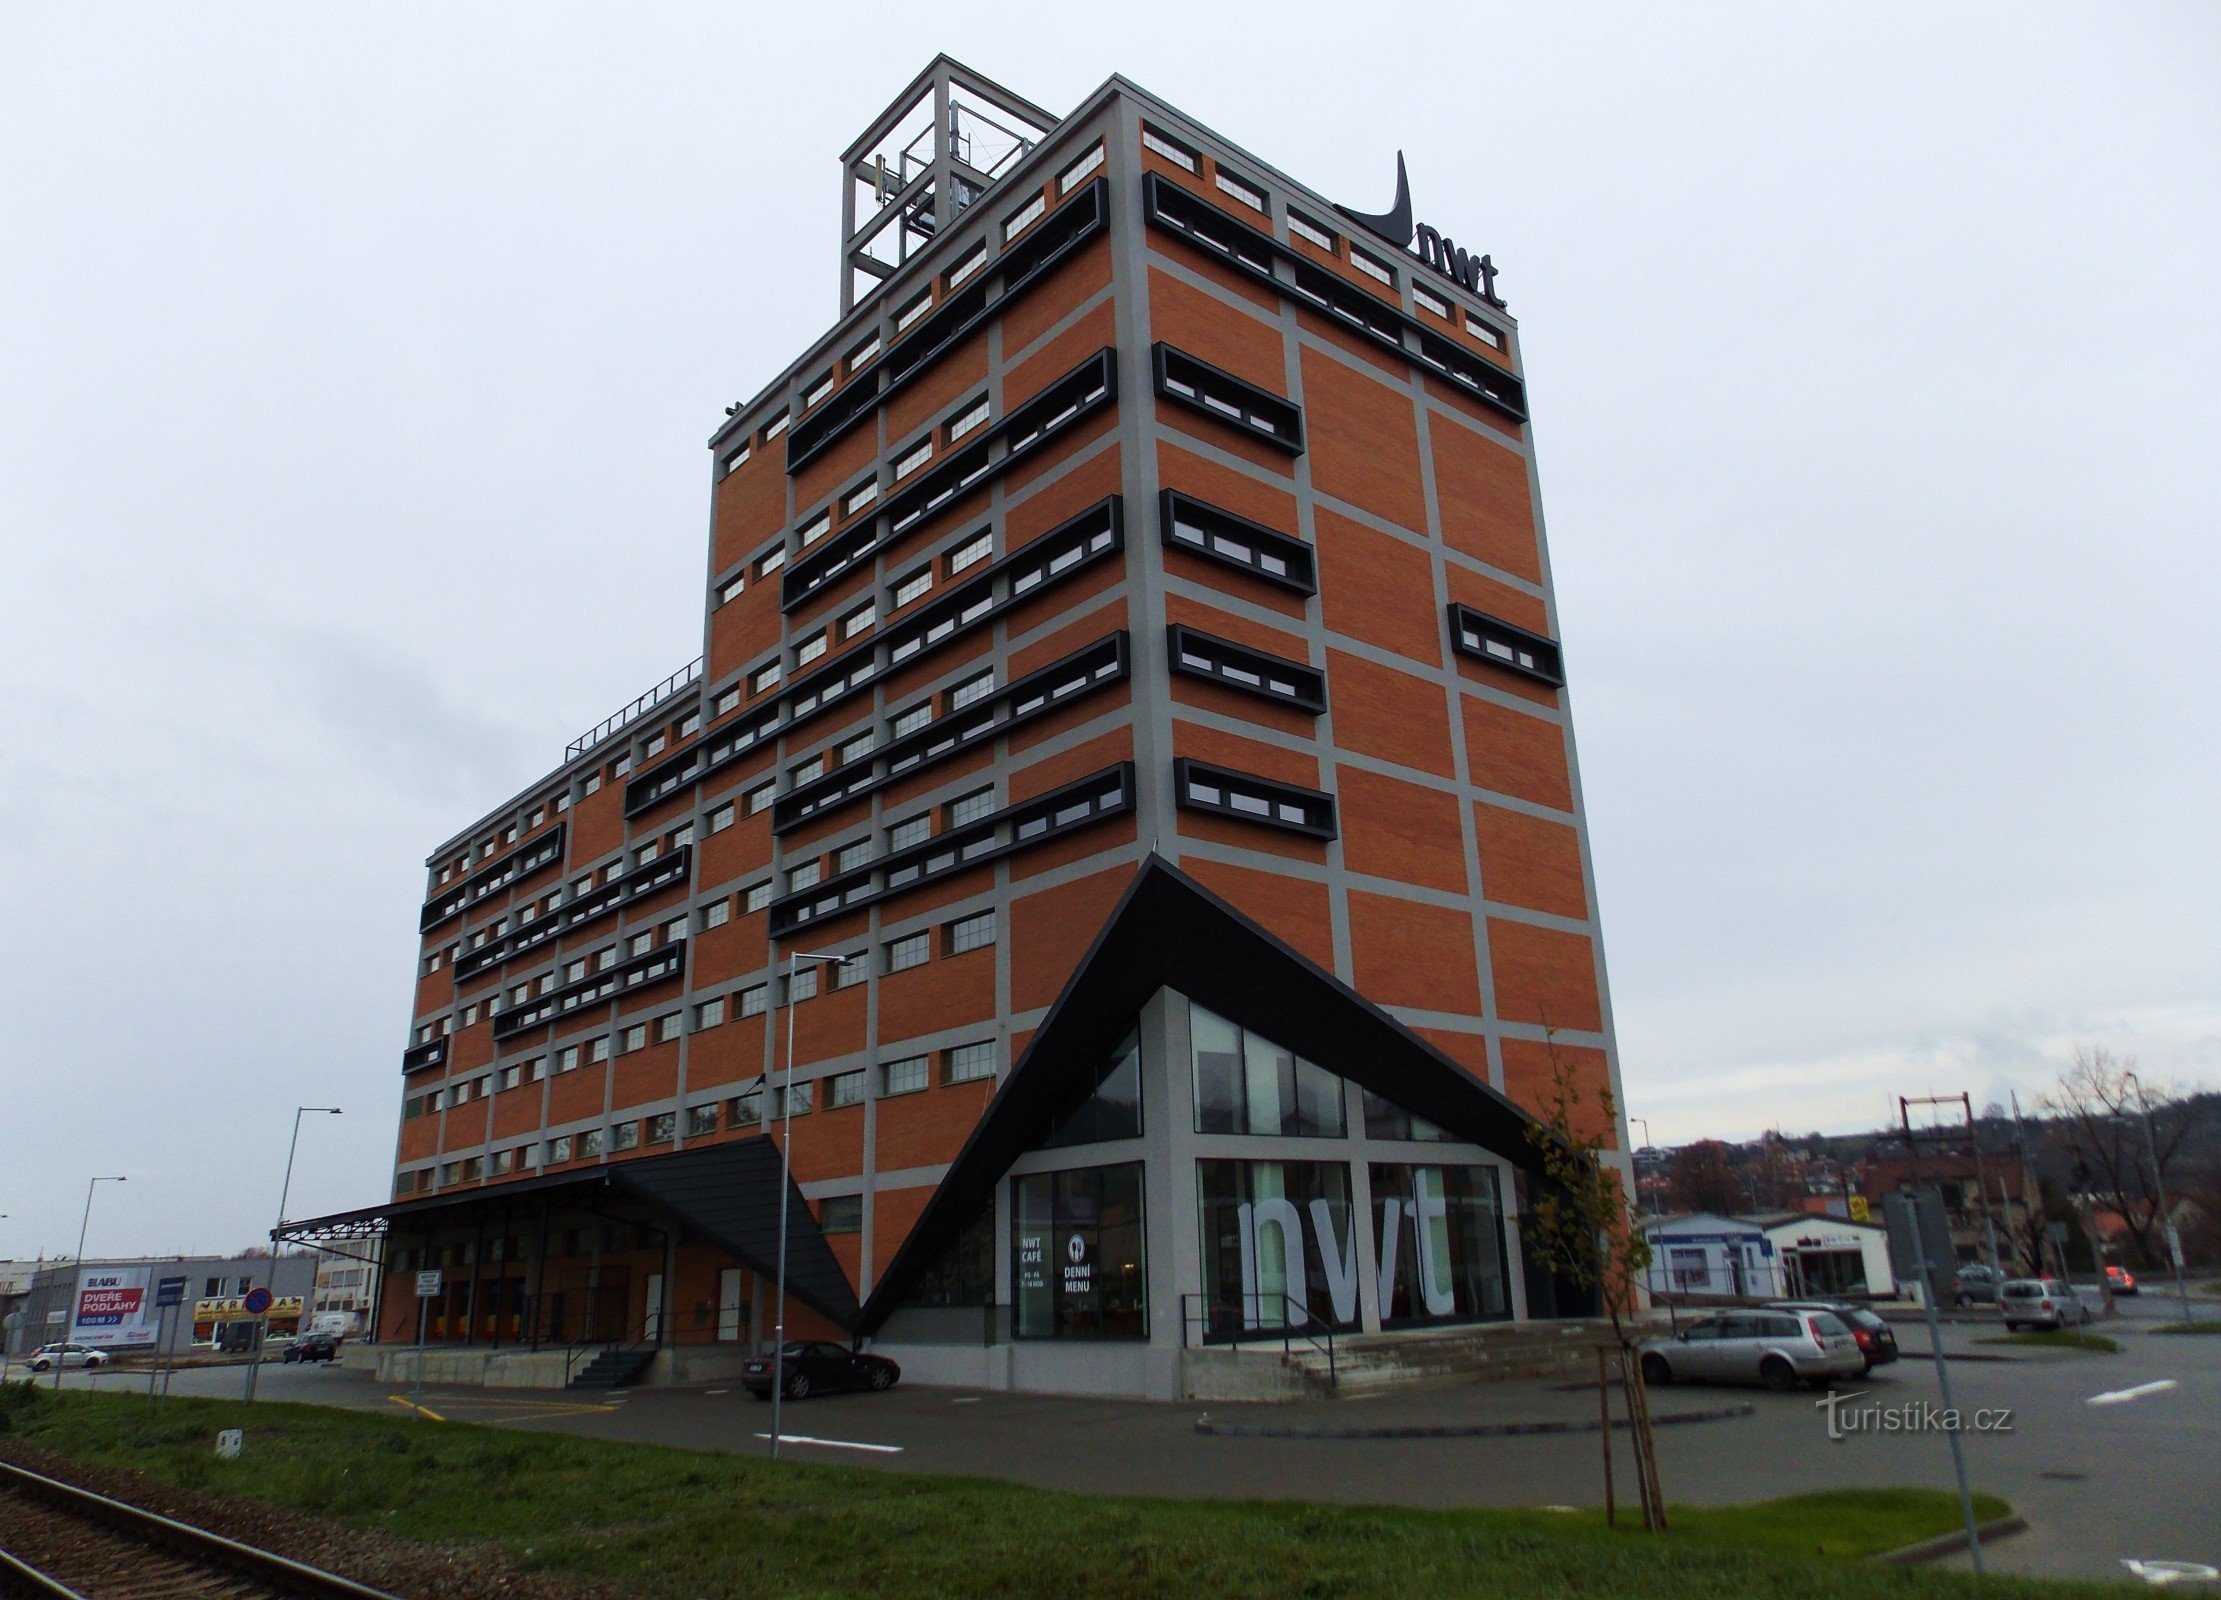 Edificio NWT en Zlín, Prštné